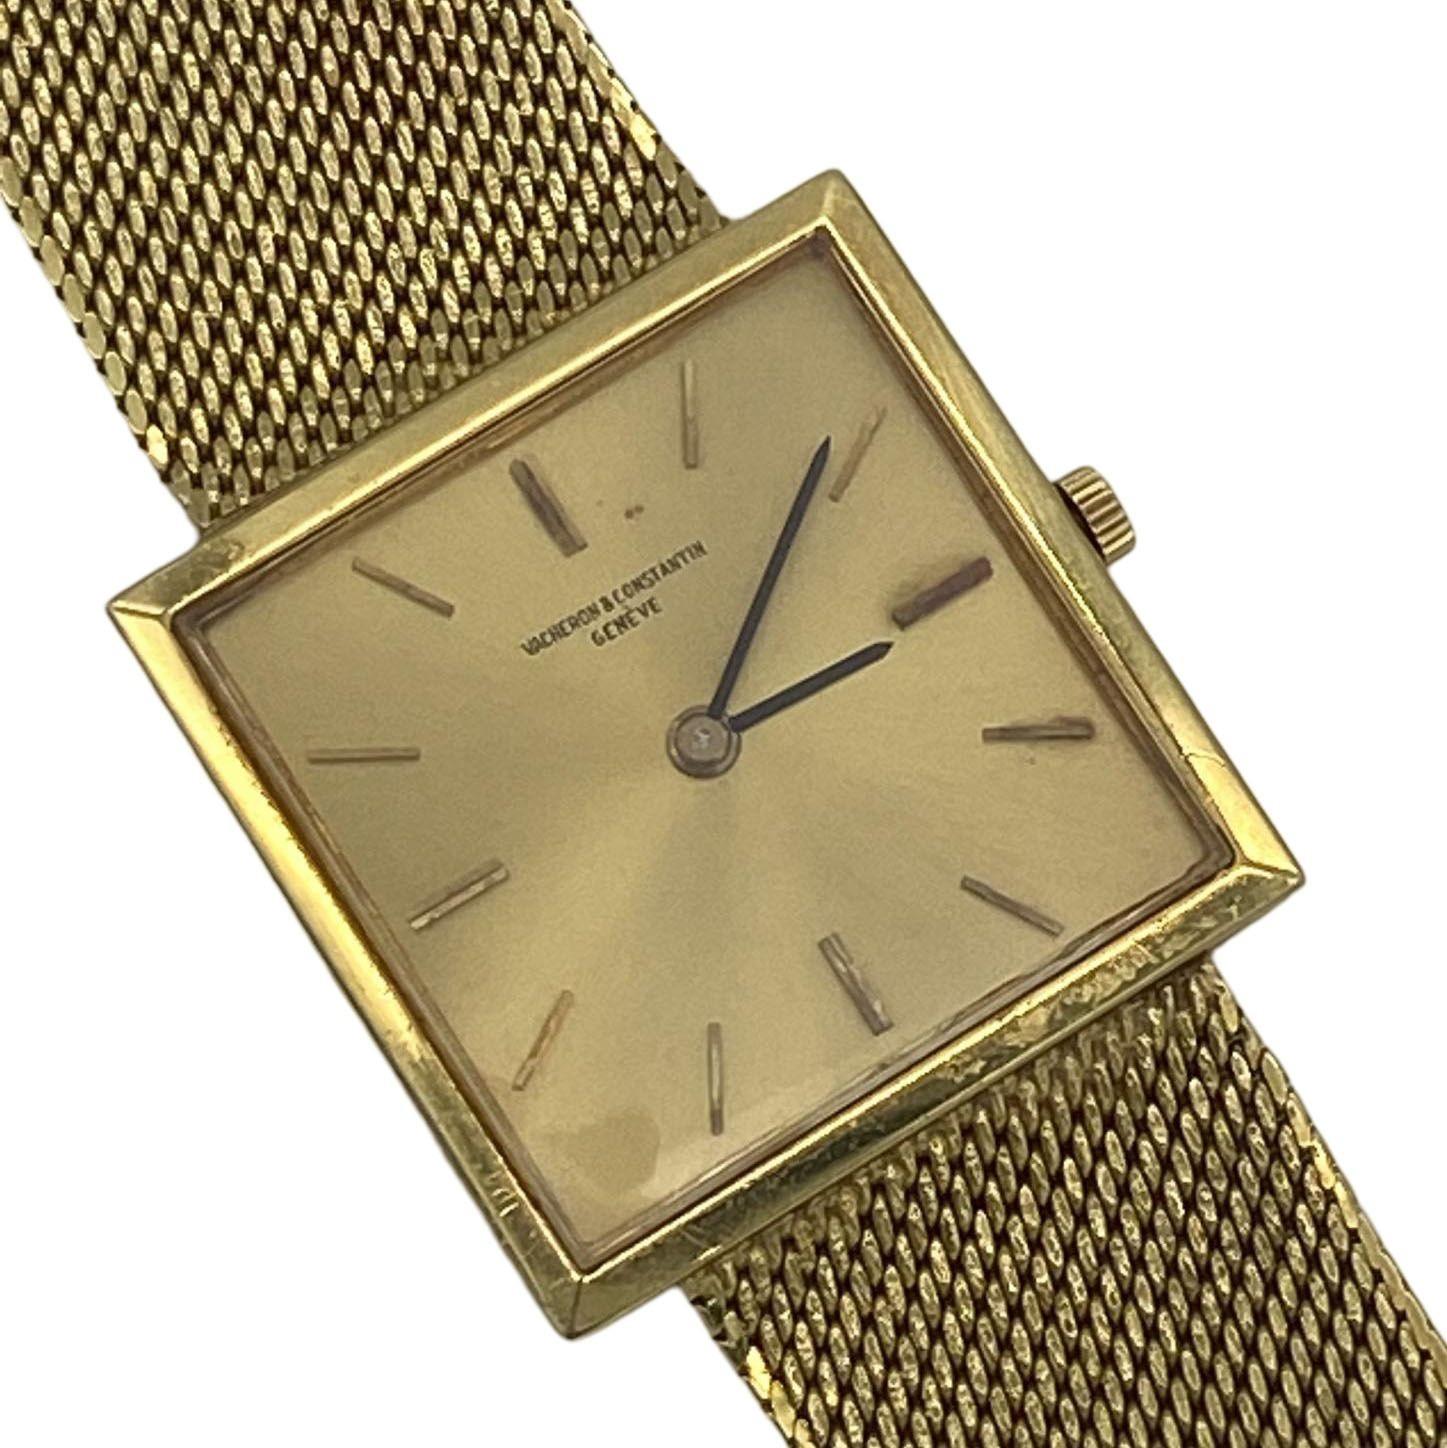 18k 0.750 gold watch